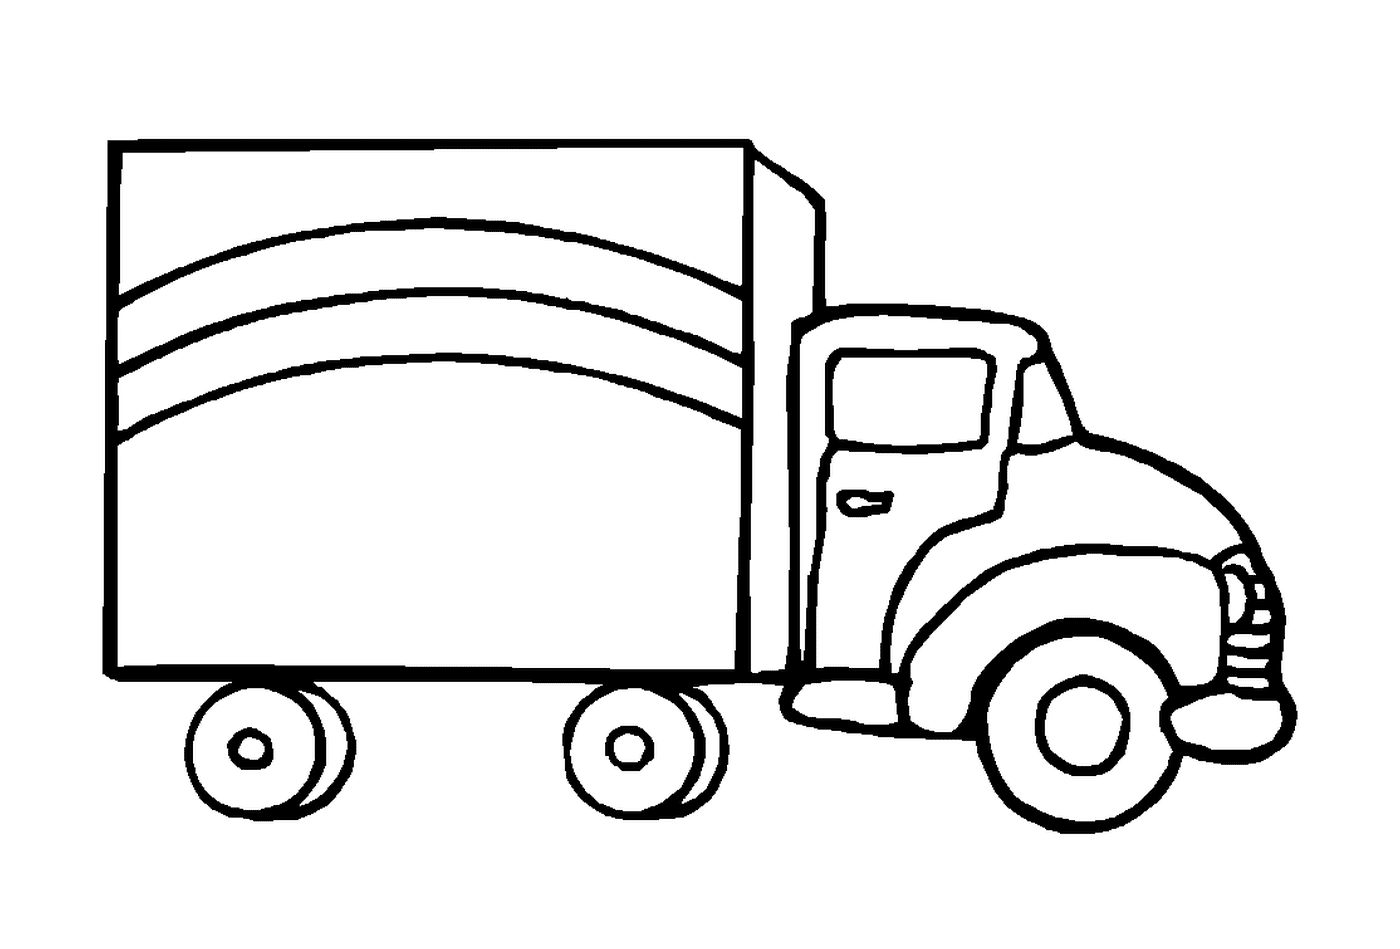  A drawn truck 